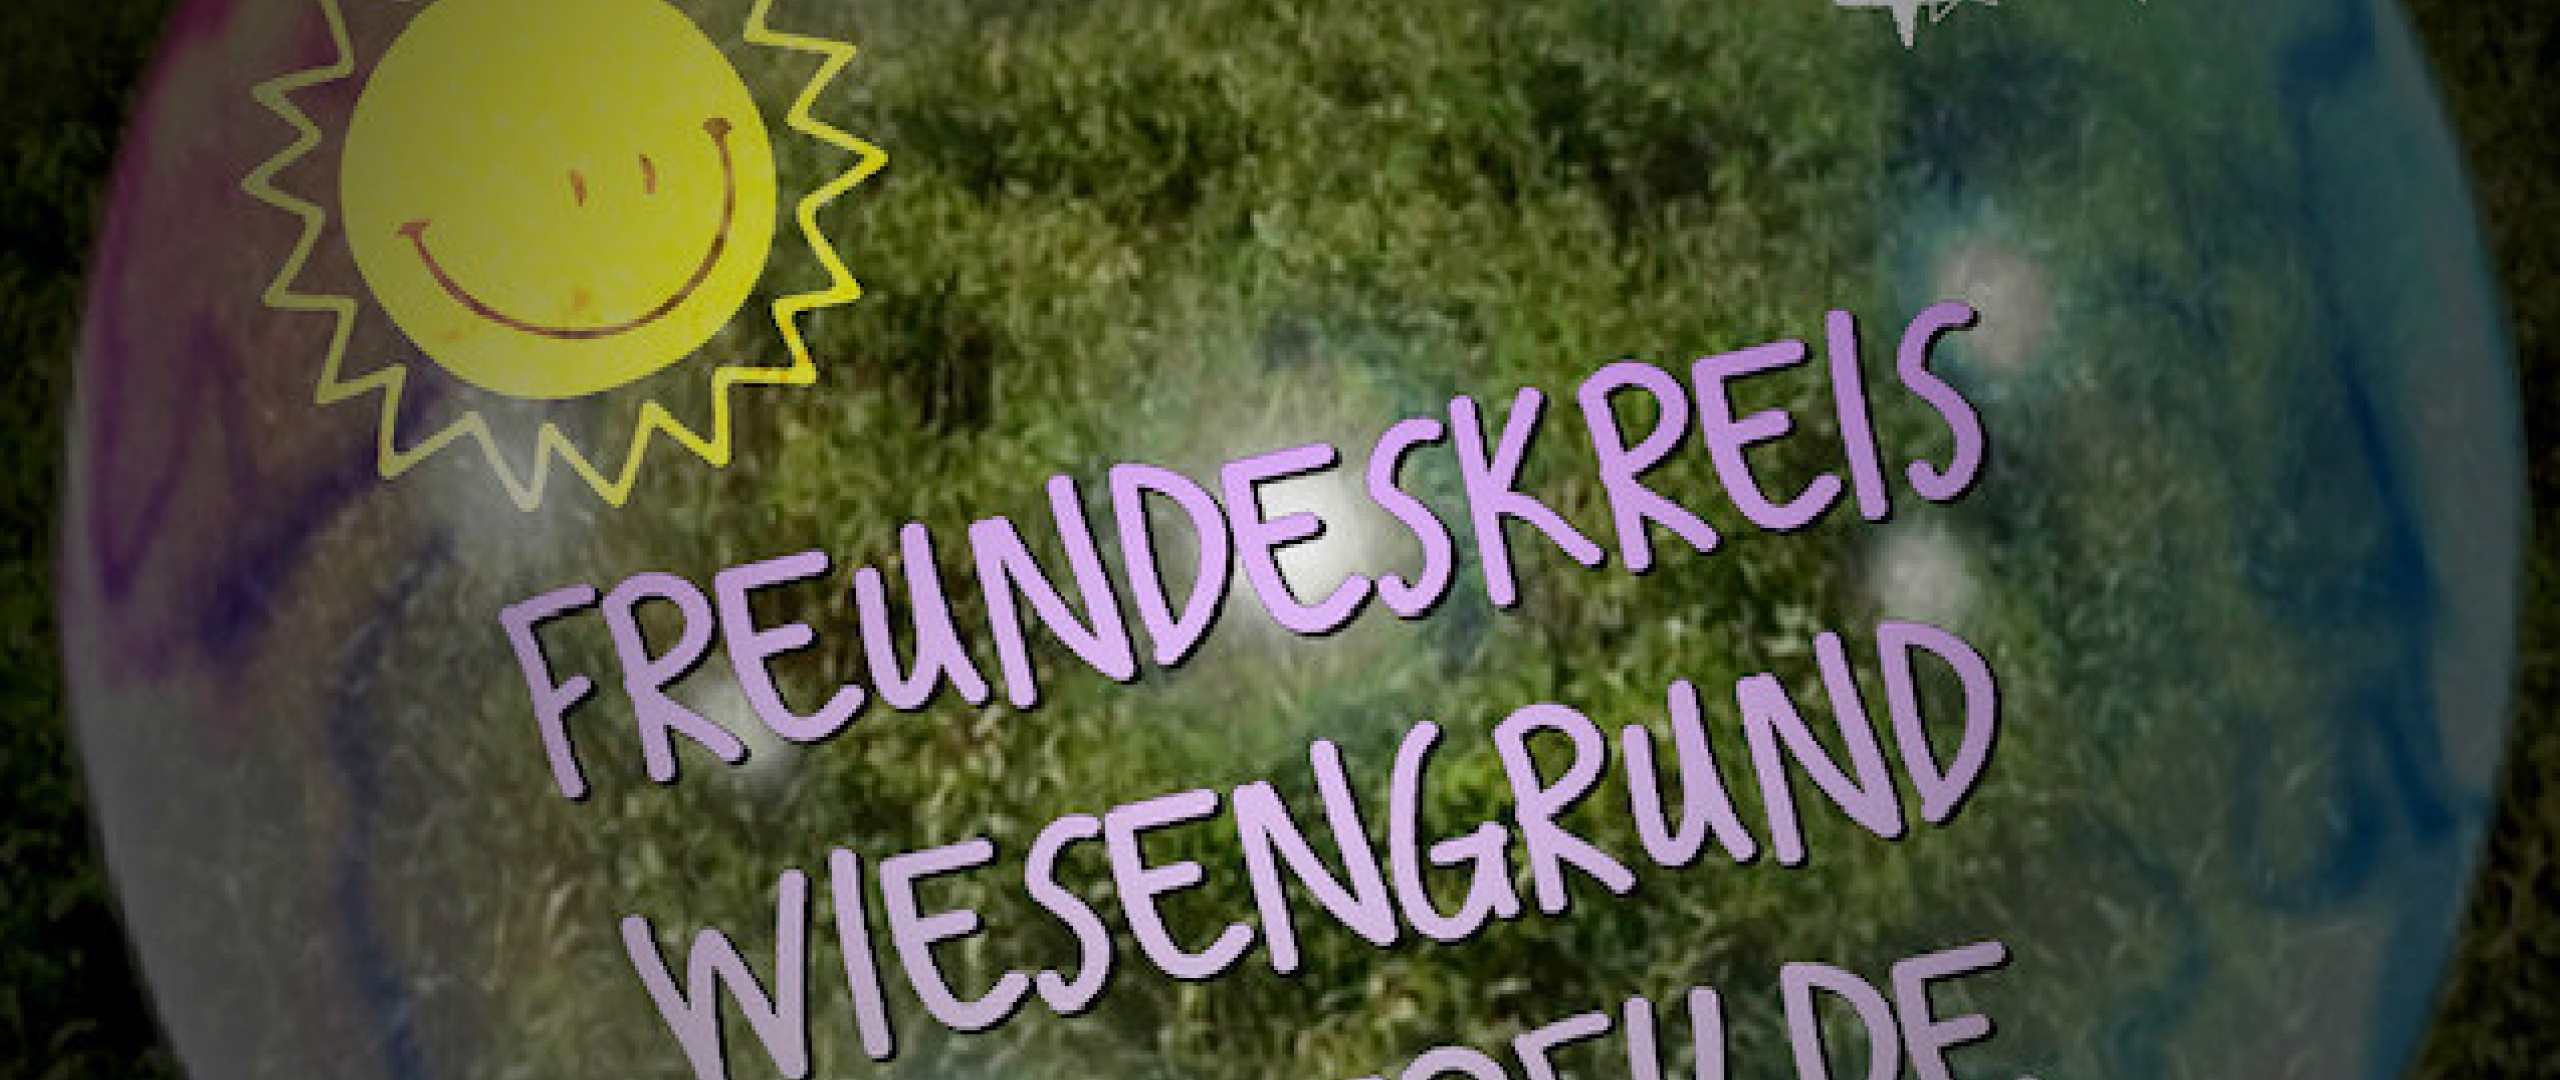 Logo Freundeskreis Wiesengrund Westerfilde